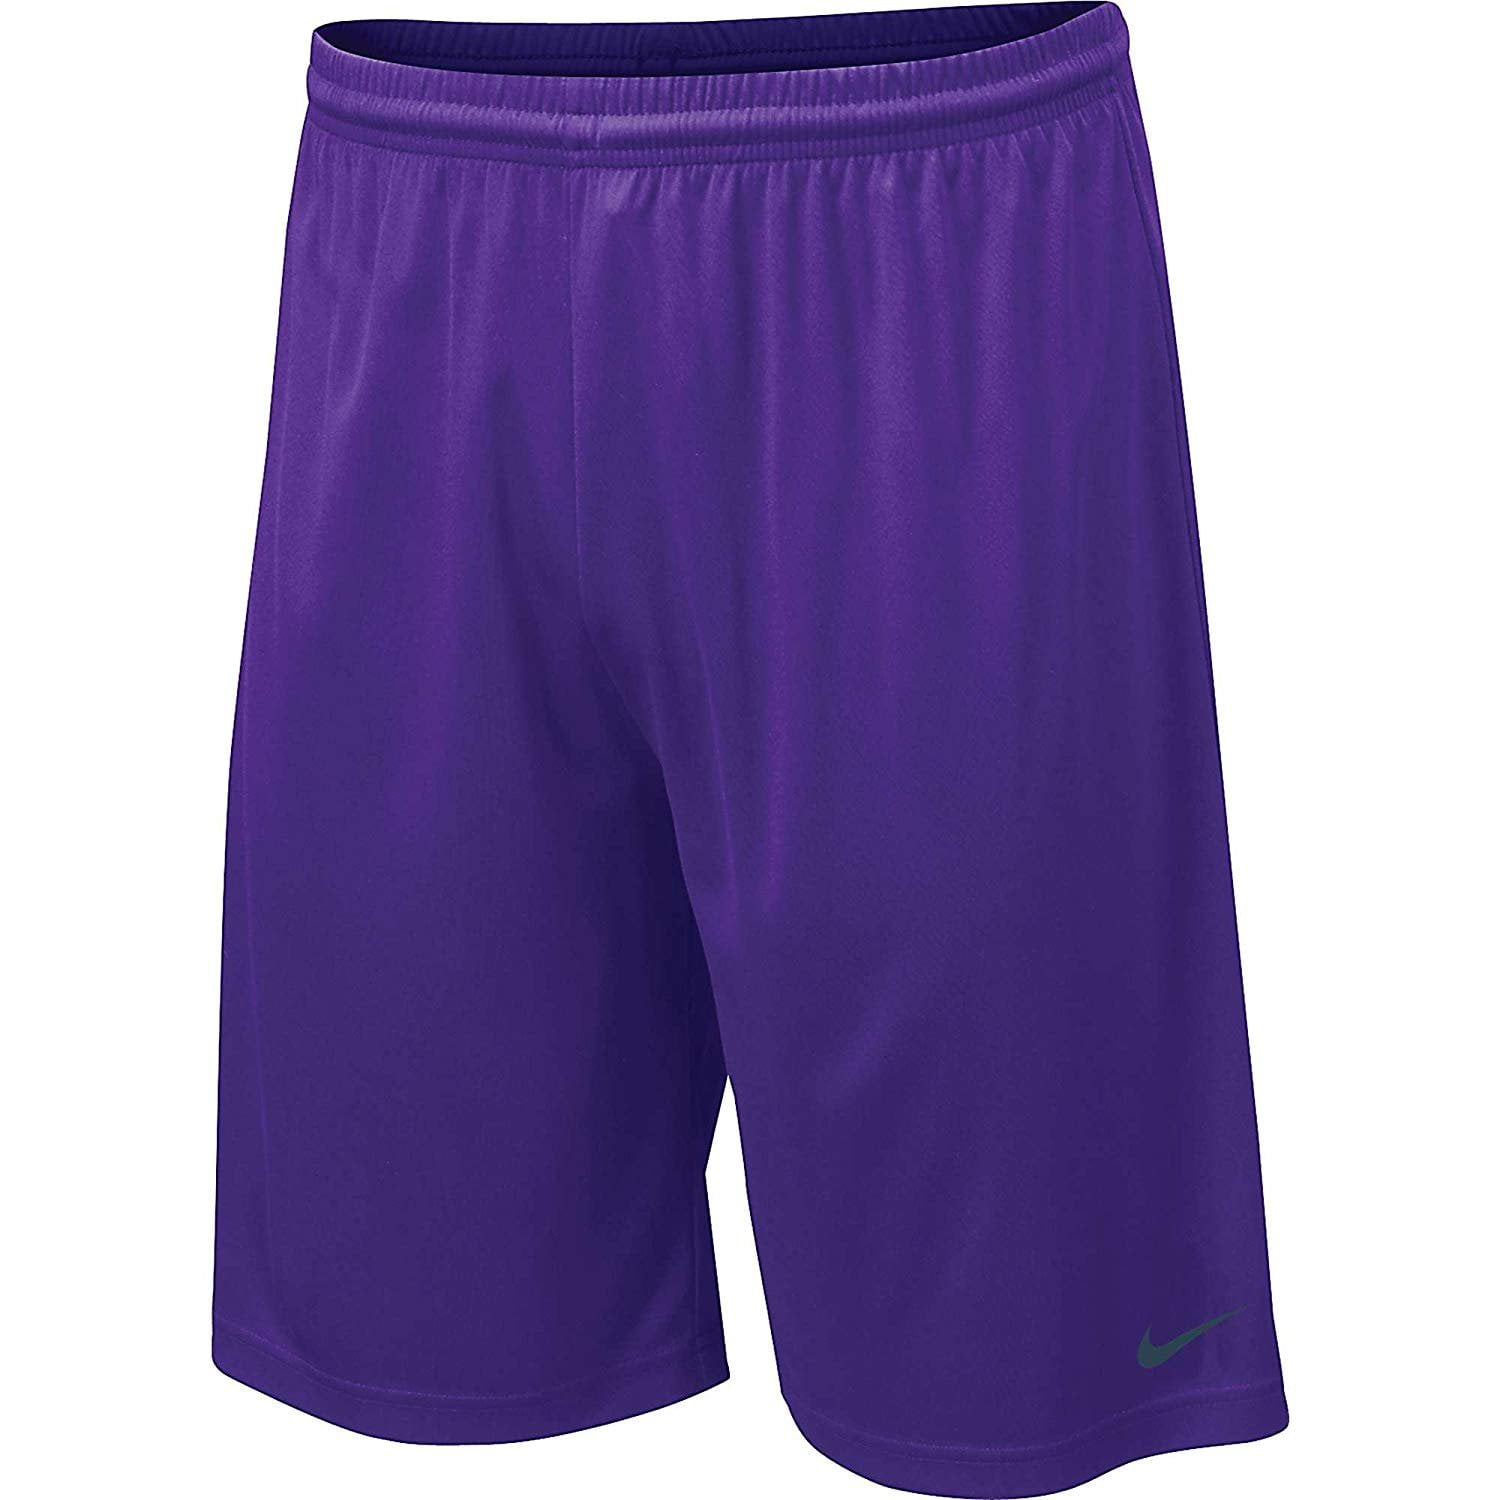 Large Purple Bike Shorts For Men